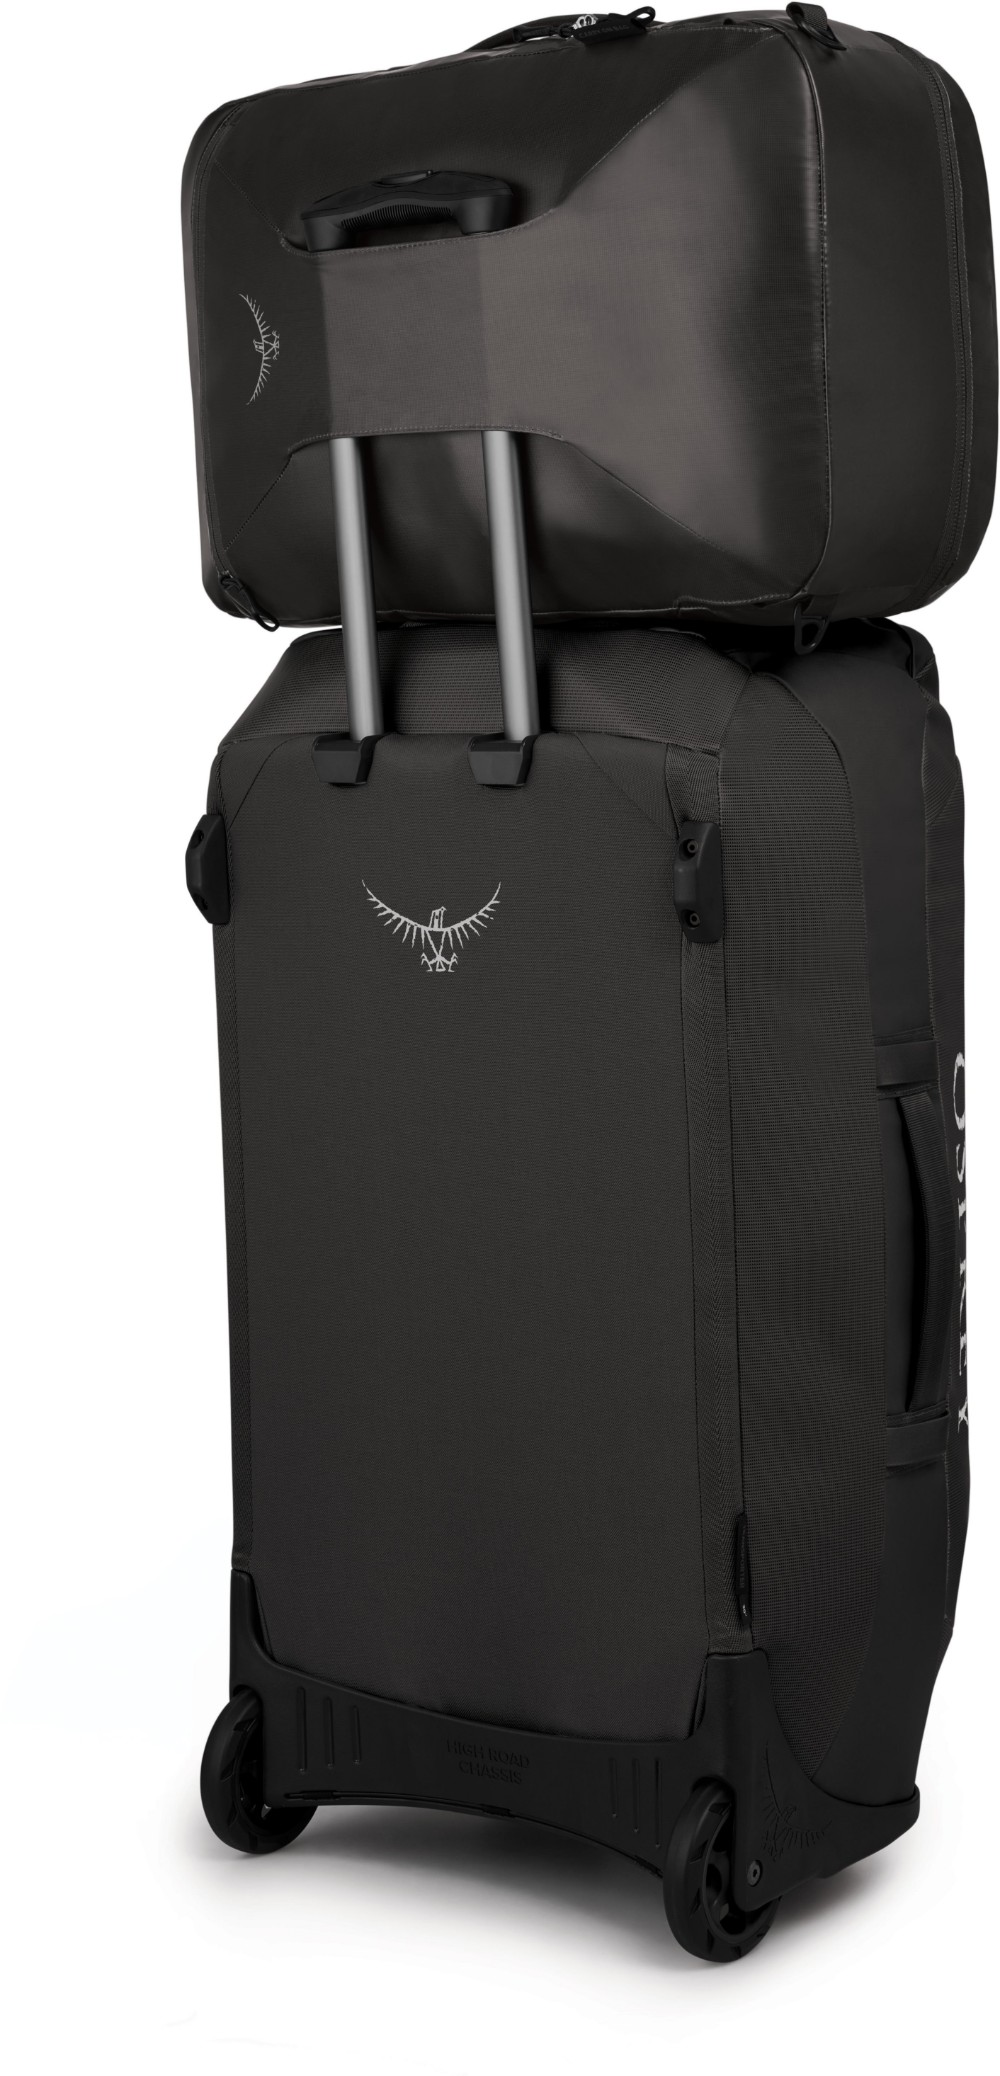 Transporter Carry-On Travel Bag image 2